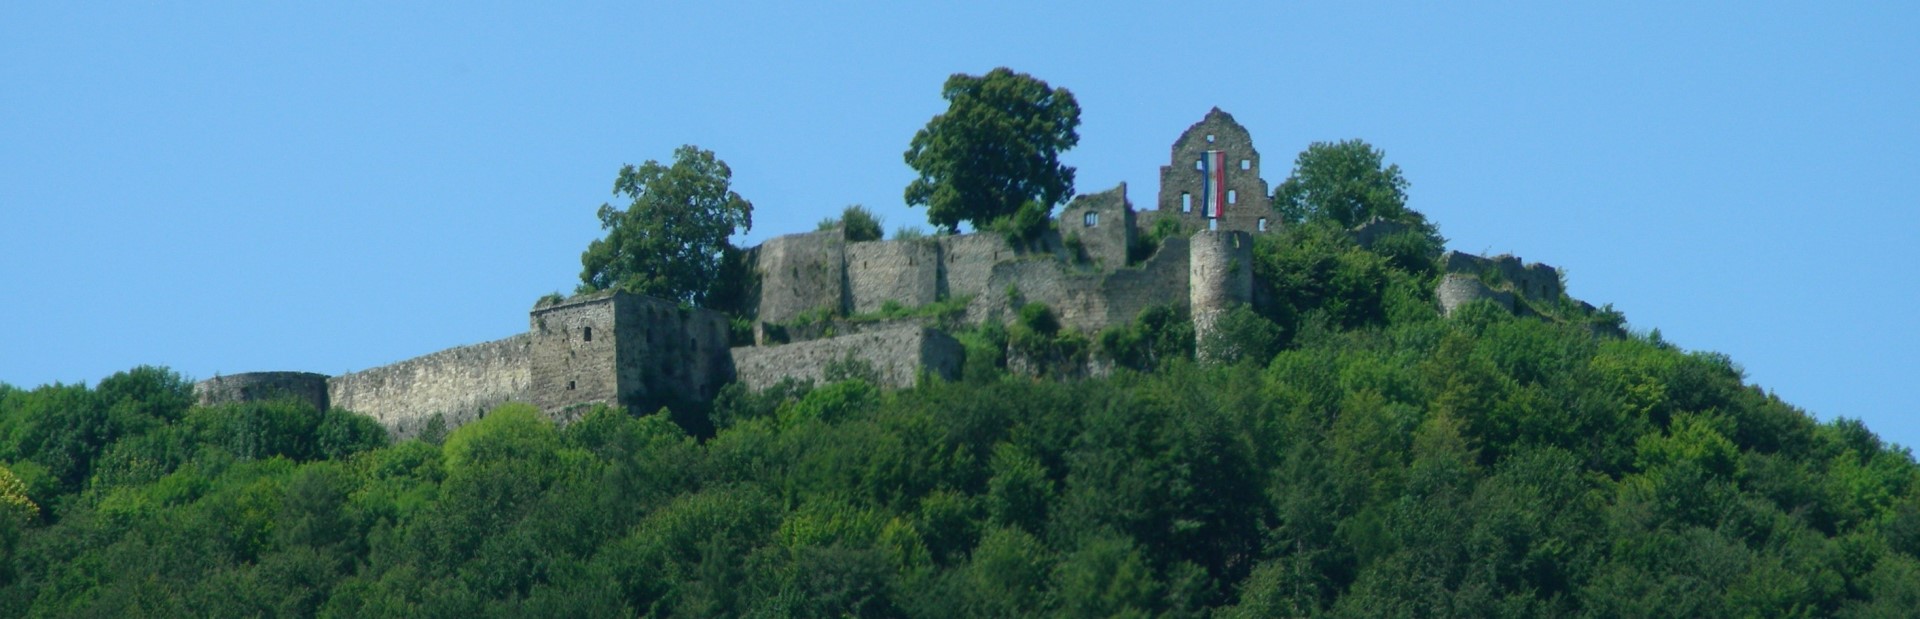 Burgruine Hohenurach am Schäferlauf, geschmückt mit den Stadtfarben